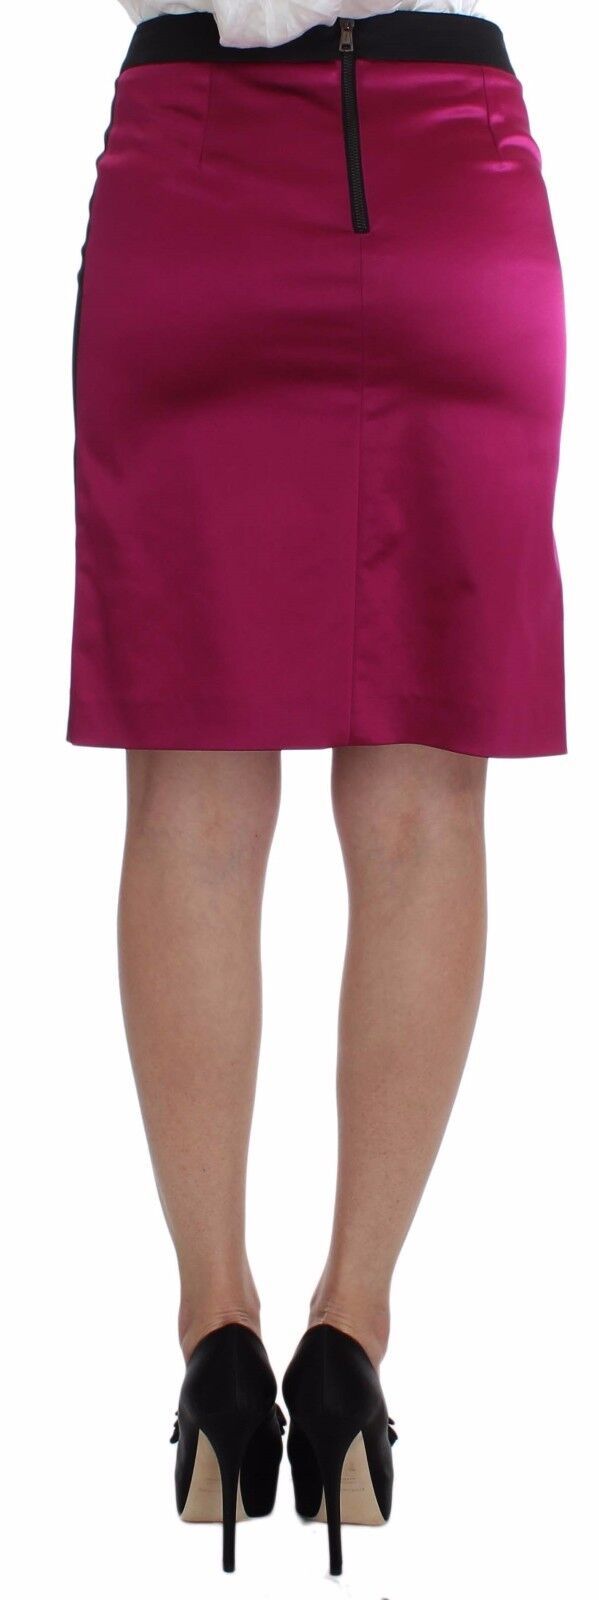 Dolce & gabbana rose noir au-dessus des genoux jupe extensible en coton